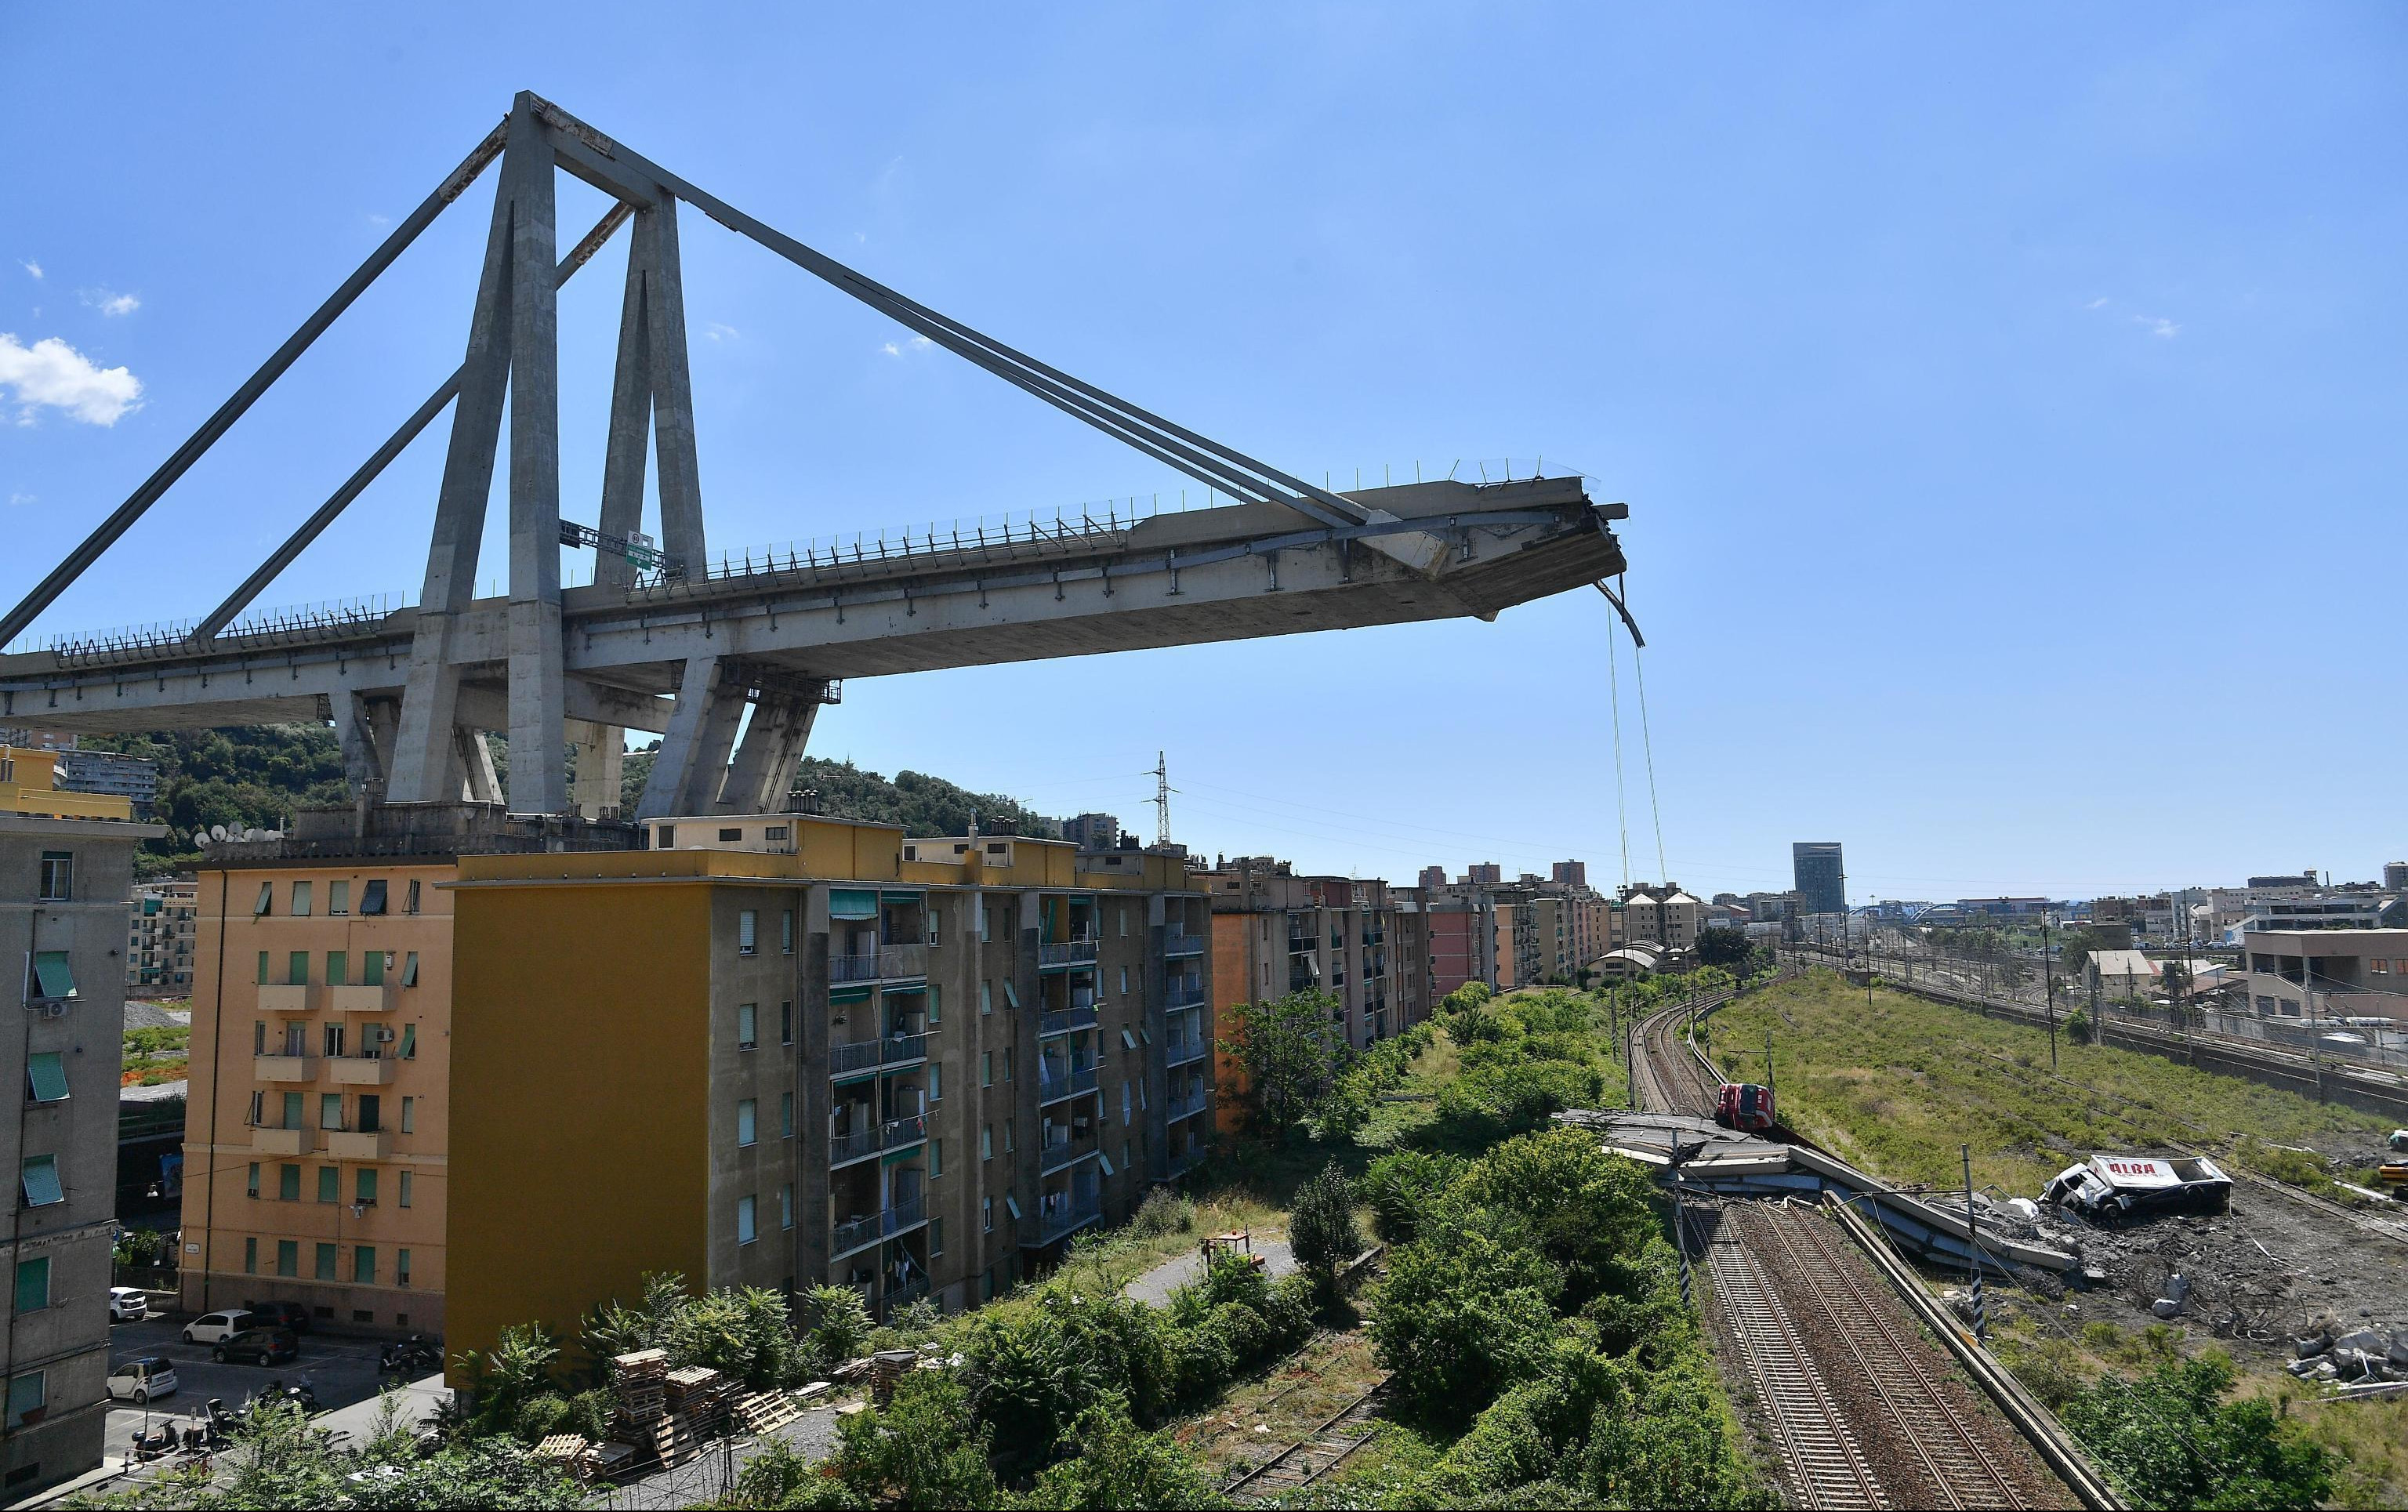 (FOTO) TRAGEDIJA U ĐENOVI MOGLA DA SE IZBEGNE?! Fotografija pokazuje u kakvom je stanju bio most pre urušavanja!